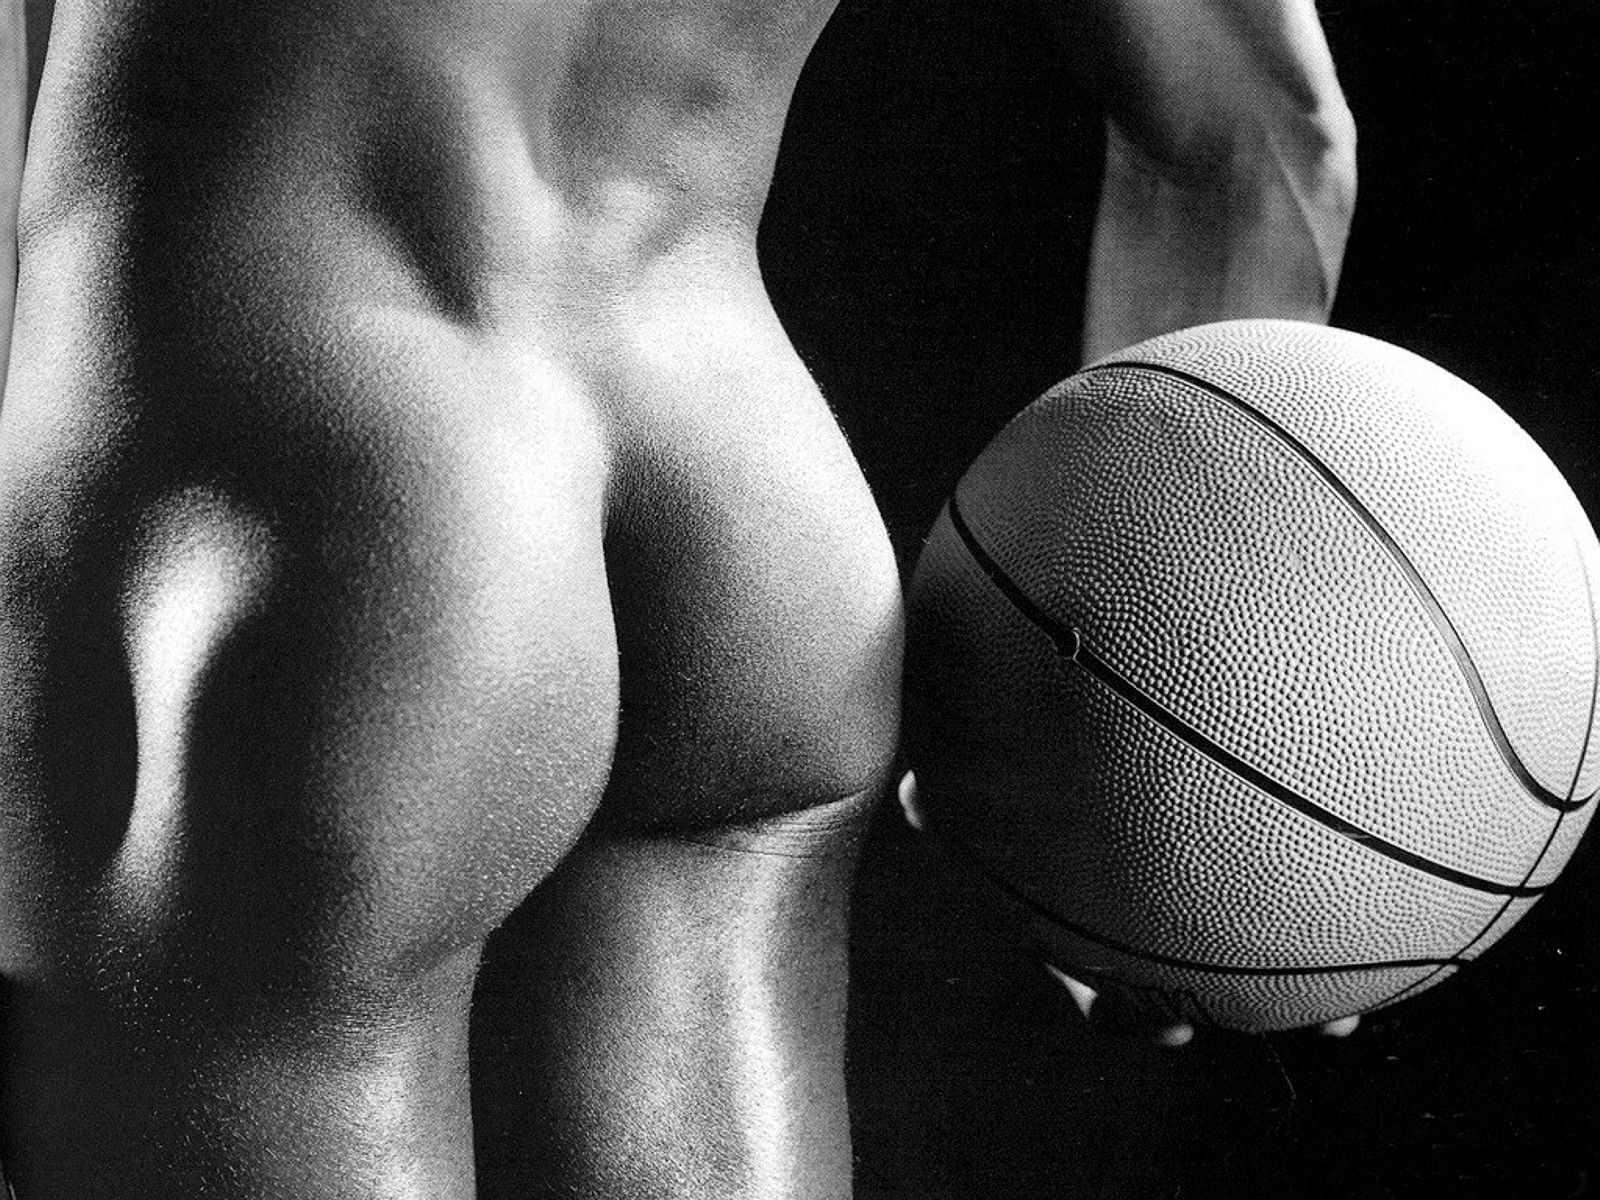 голая мужская попа в пупырышек, как и баскетбольный мяч рядом с ней, фото красивого мужчины